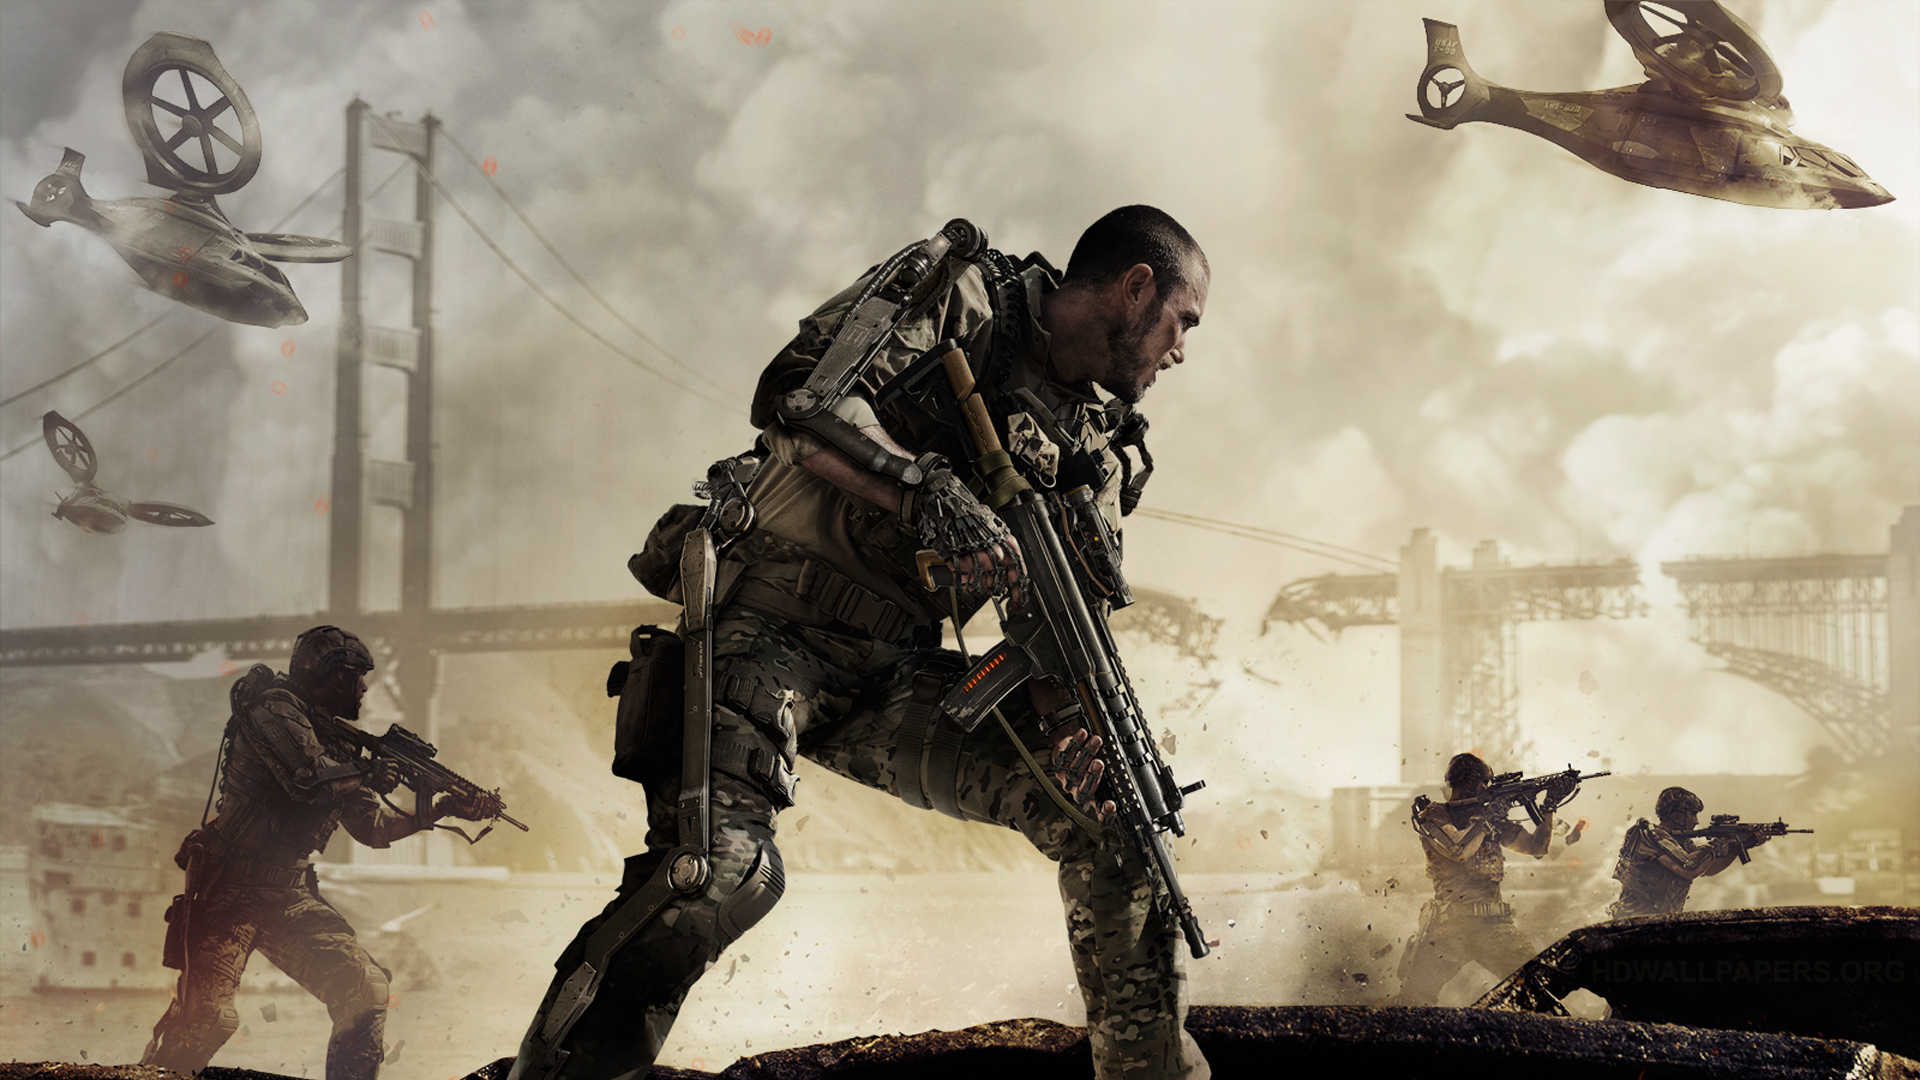 Call of Duty - Advanced Warfare / Edição Day Zero - Português (Brasil) 